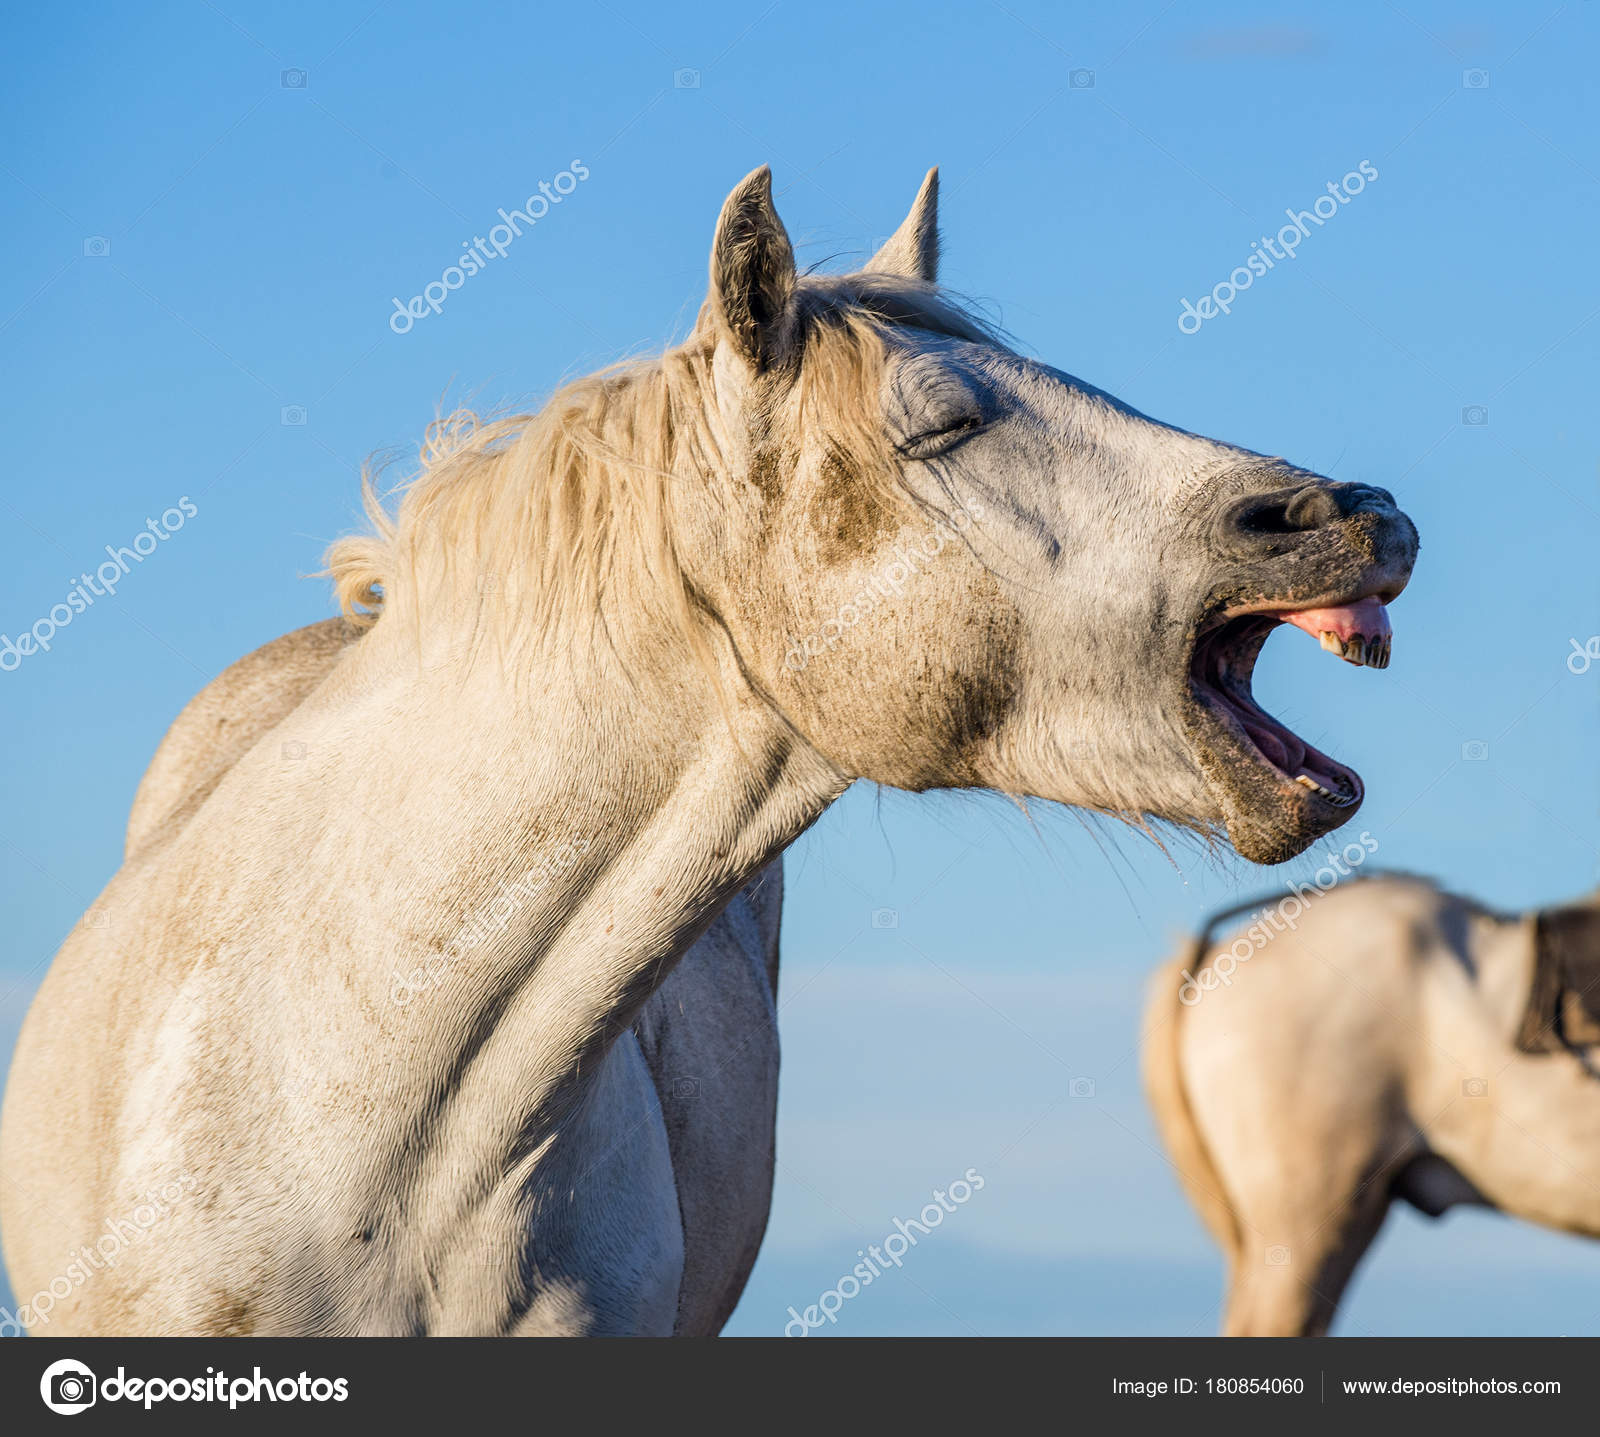 Fotos de Cavalo branco rindo, Imagens de Cavalo branco rindo sem